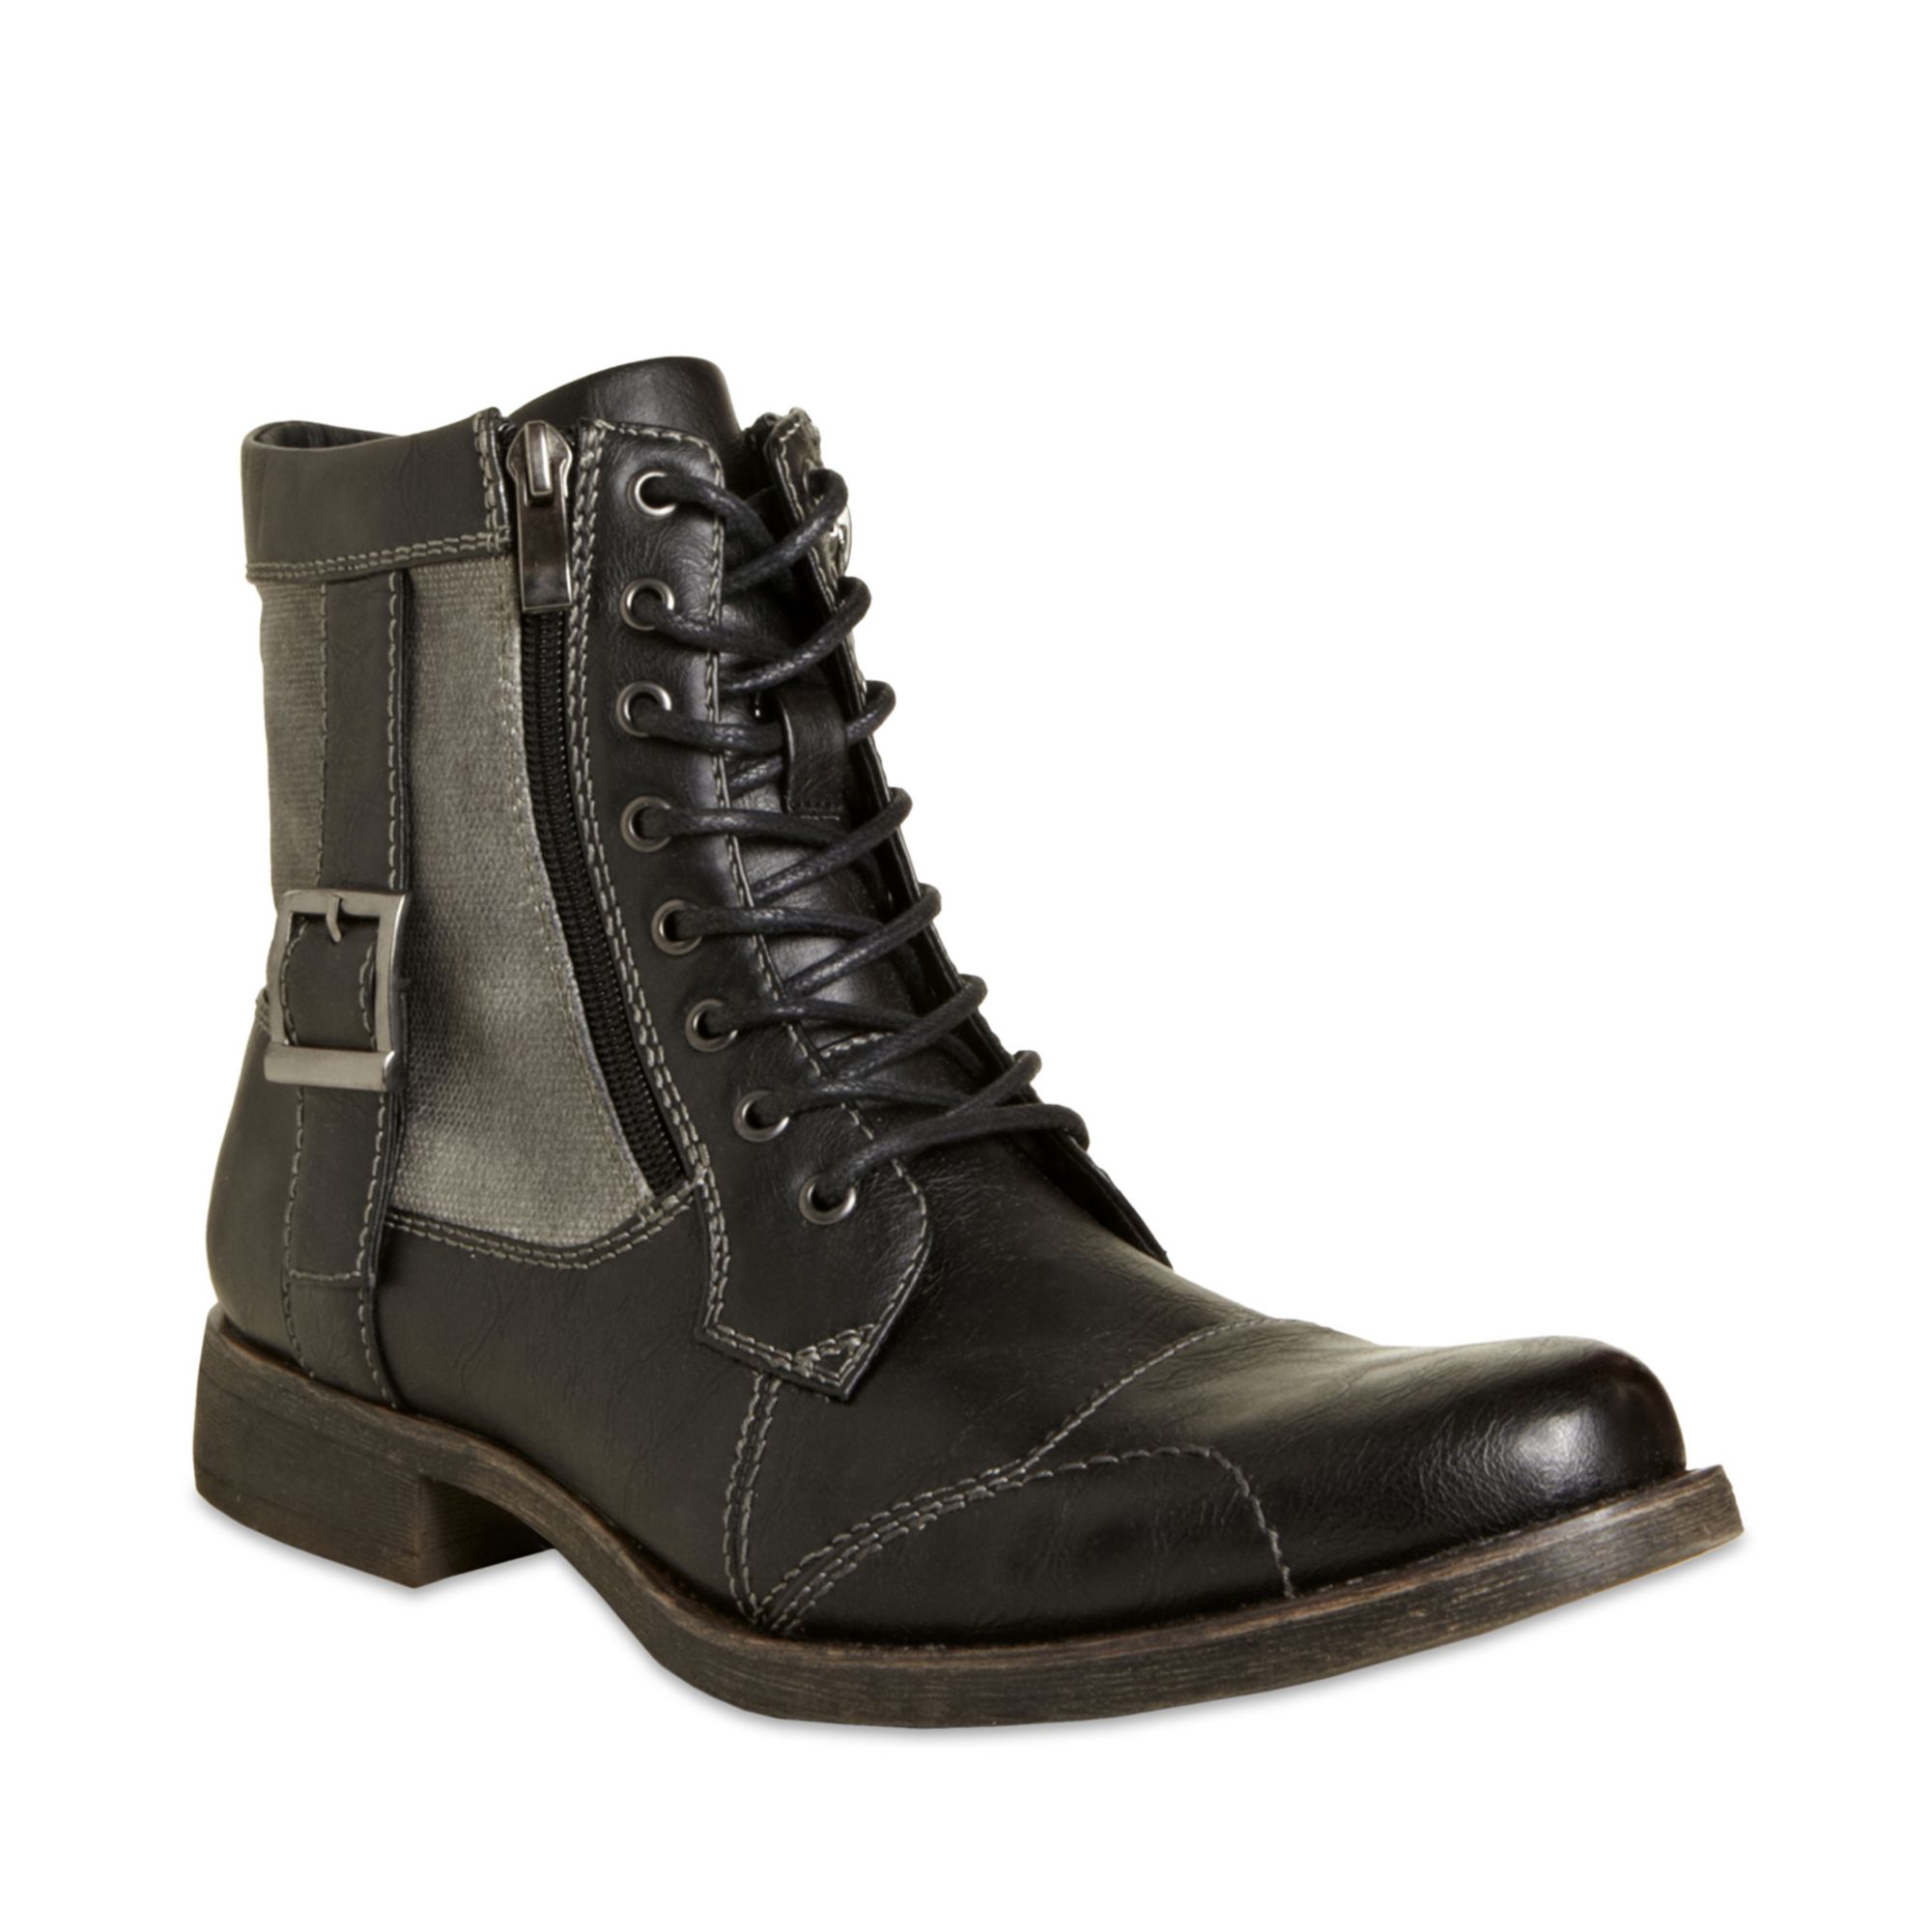 Buy > steve madden mens zipper boots > in stock